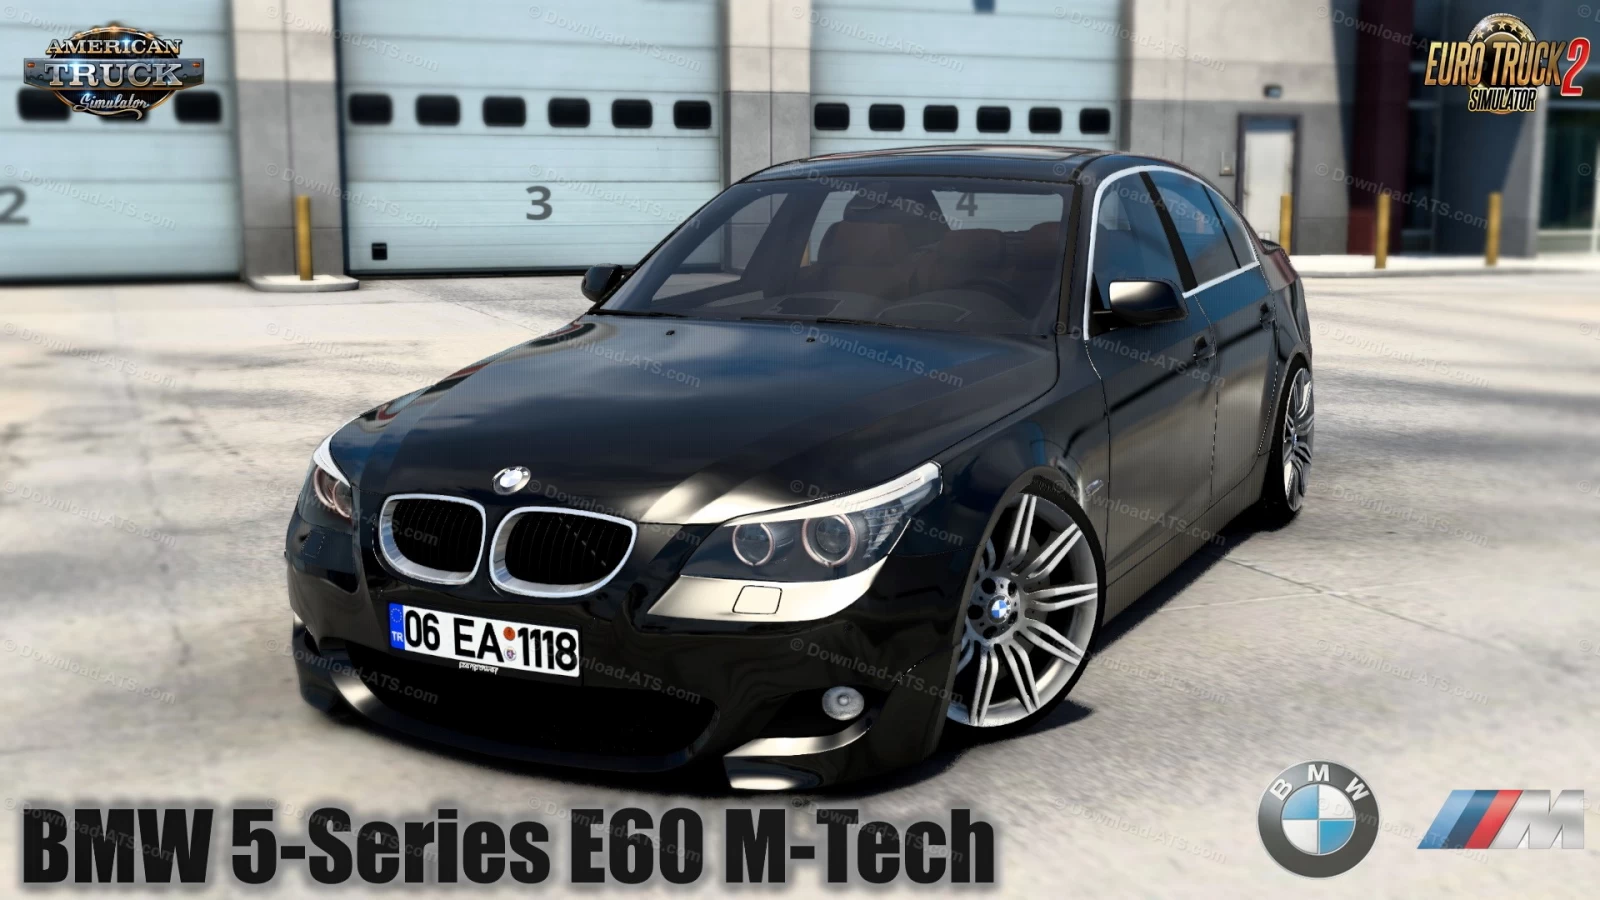 BMW 5-Series E60 M-Tech + Interior v2.0 (1.45.x) for ATS